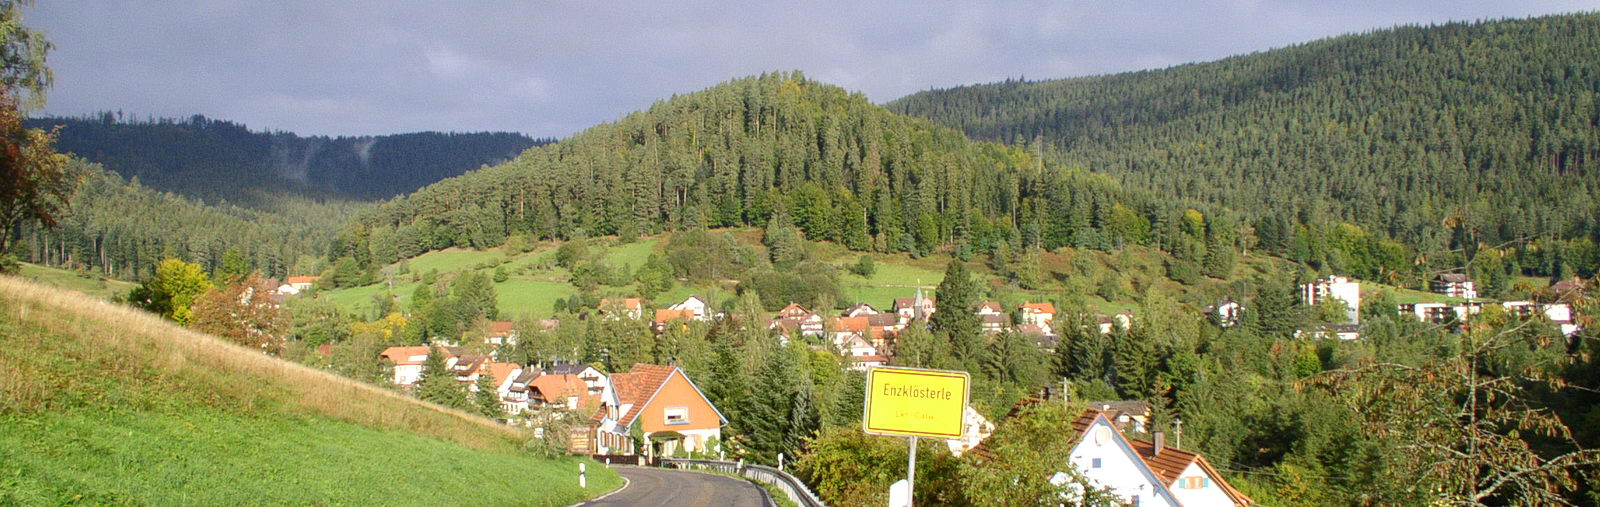 Climatic health resort Enzklösterle